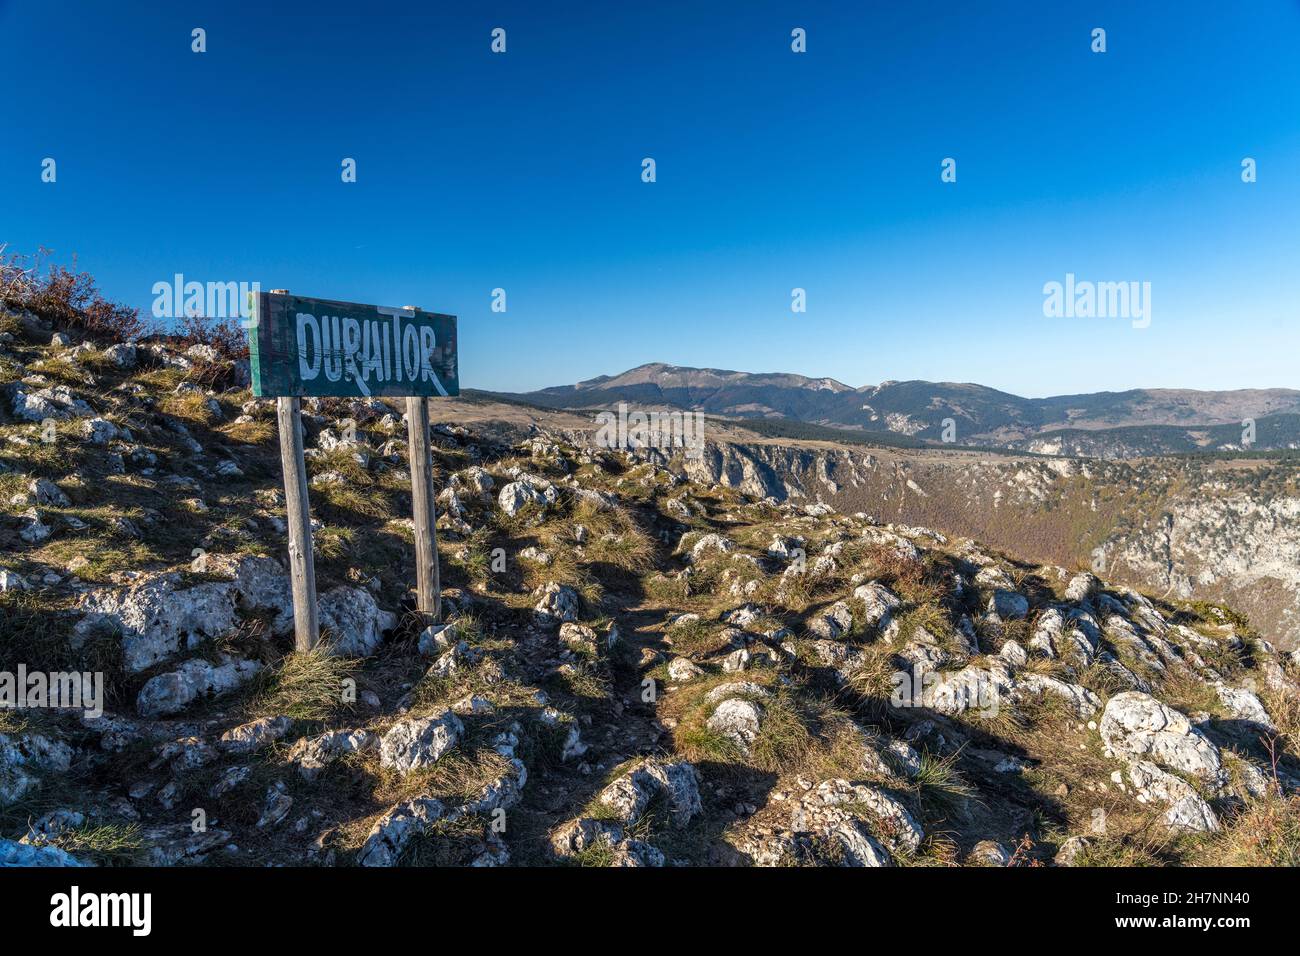 Schild Durmitor am Aussichtsgipfel Curevac, Durmitor Nationalpark, Žabljak, Montenegro, Europa  |    Durmitor sign at Curevac viewpoint, Durmitor Nati Stock Photo